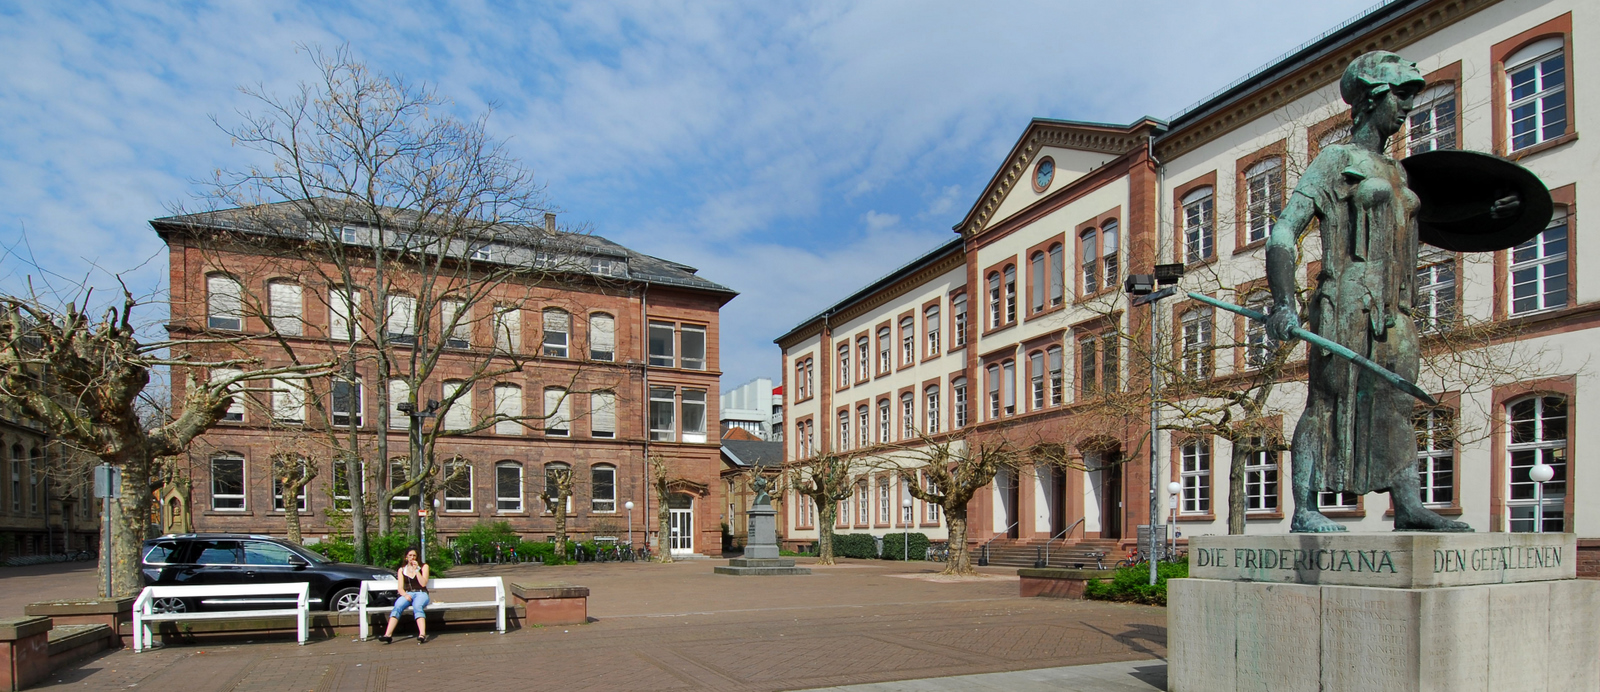 Die Fridericiana ziert den Ehrenhof auf dem Campus. Bildquelle: Stadt-Karlsruhe